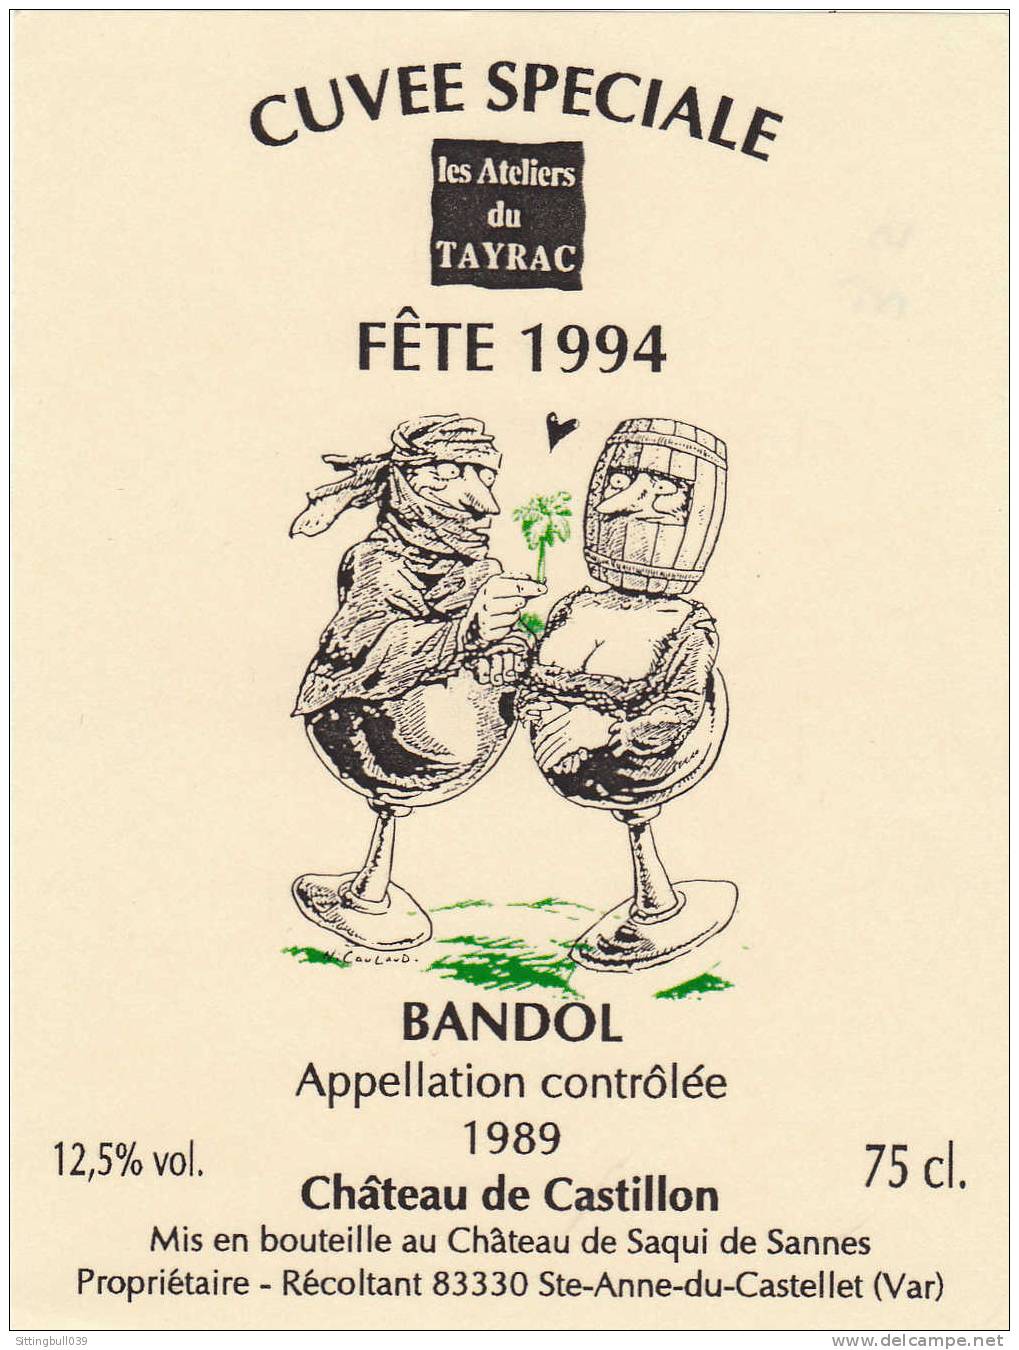 NICOULAUD. Etiquette De Vin, Cuvée Spéciale Les Ateliers Du Tayrac, Fête 1994. Château De Castillon Pour Un BANDOL 1989. - Advertisement